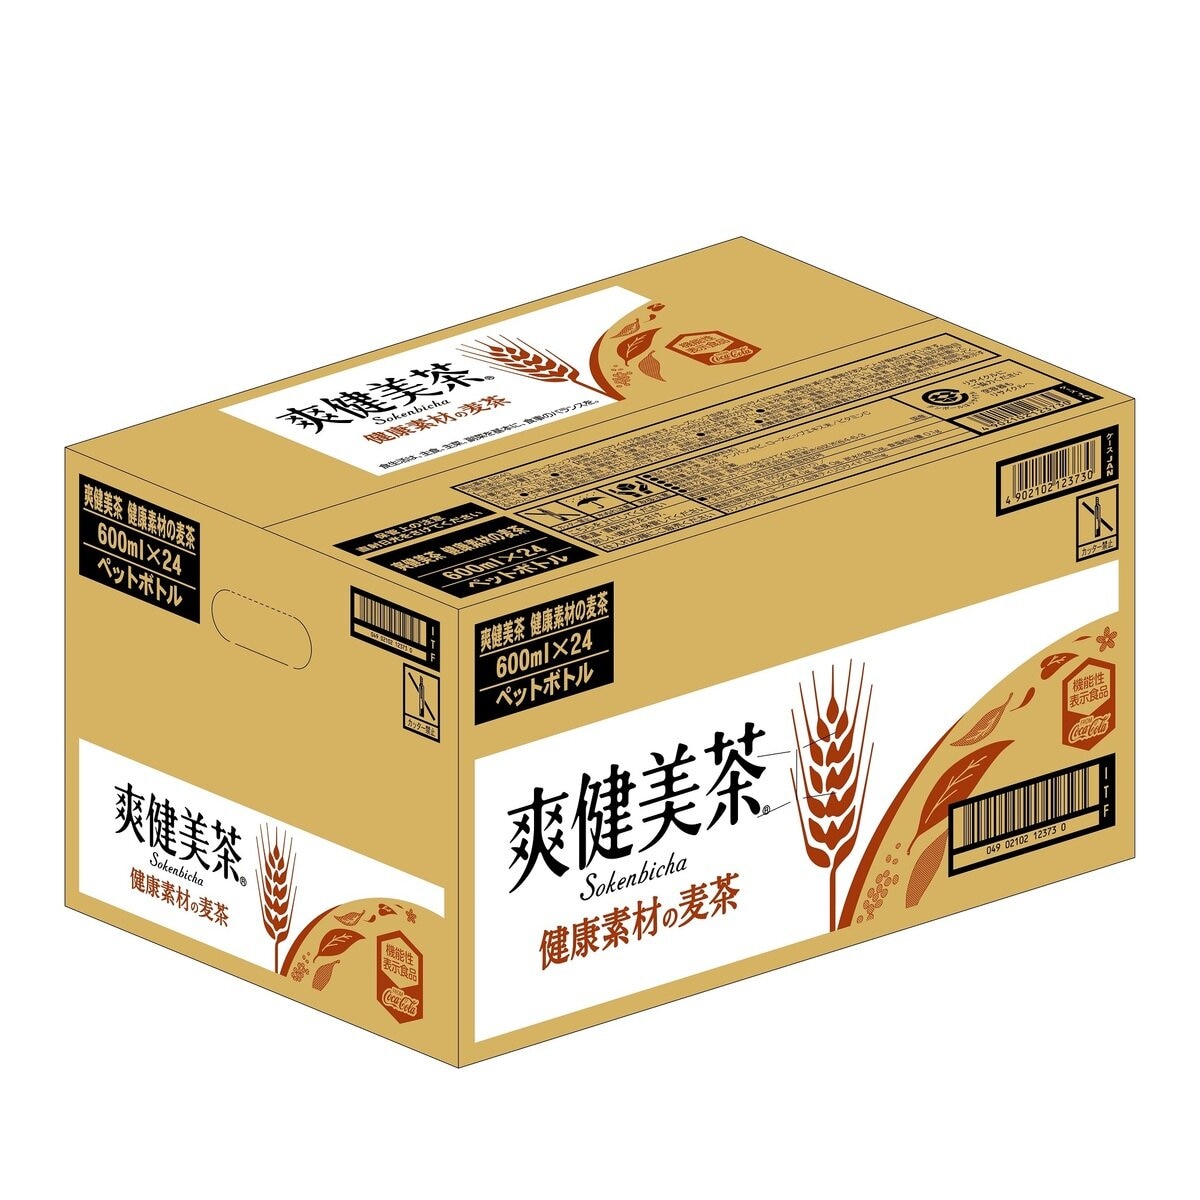 爽健美茶 健康素材の麦茶 600ml x 24本 x 2ケース ペットボトル | Costco Japan